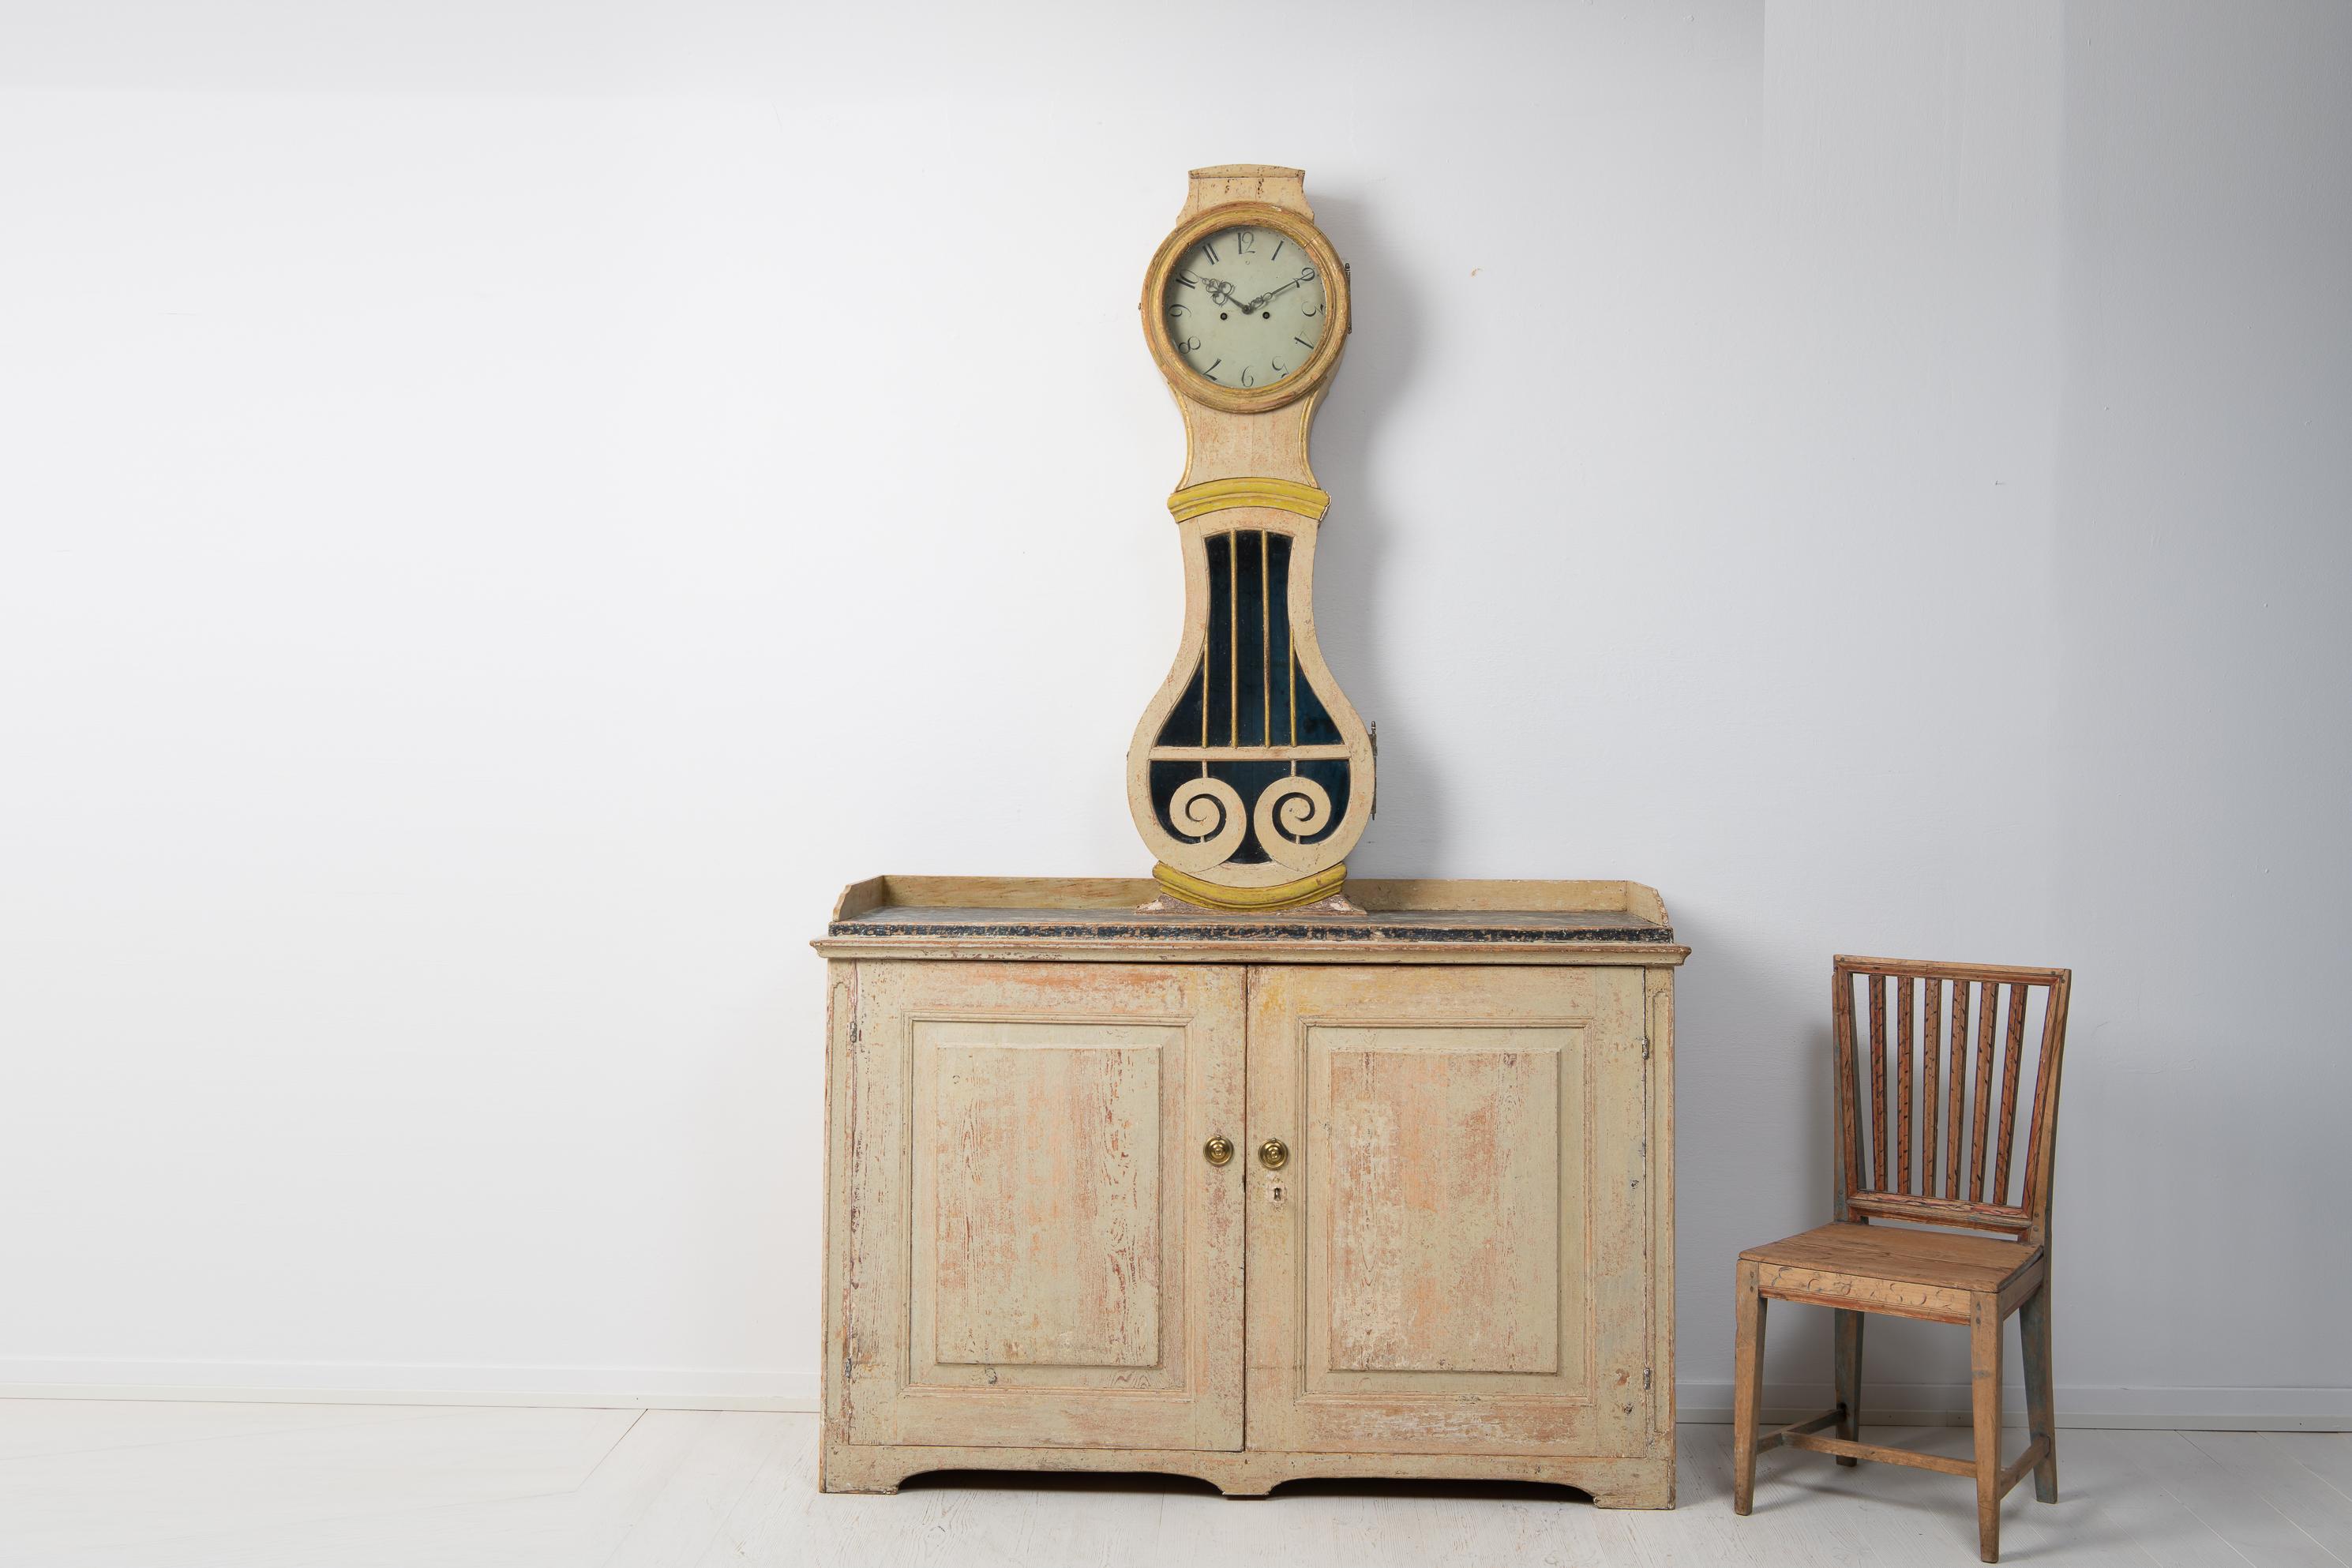 Rare cabinet d'horlogerie antique de Suède fabriqué pendant la période de transition entre l'époque gustavienne et l'époque de l'empire. Le meuble provient du nord de la Suède et a été fabriqué entre 1820 et 1840. Le meuble inférieur a deux portes